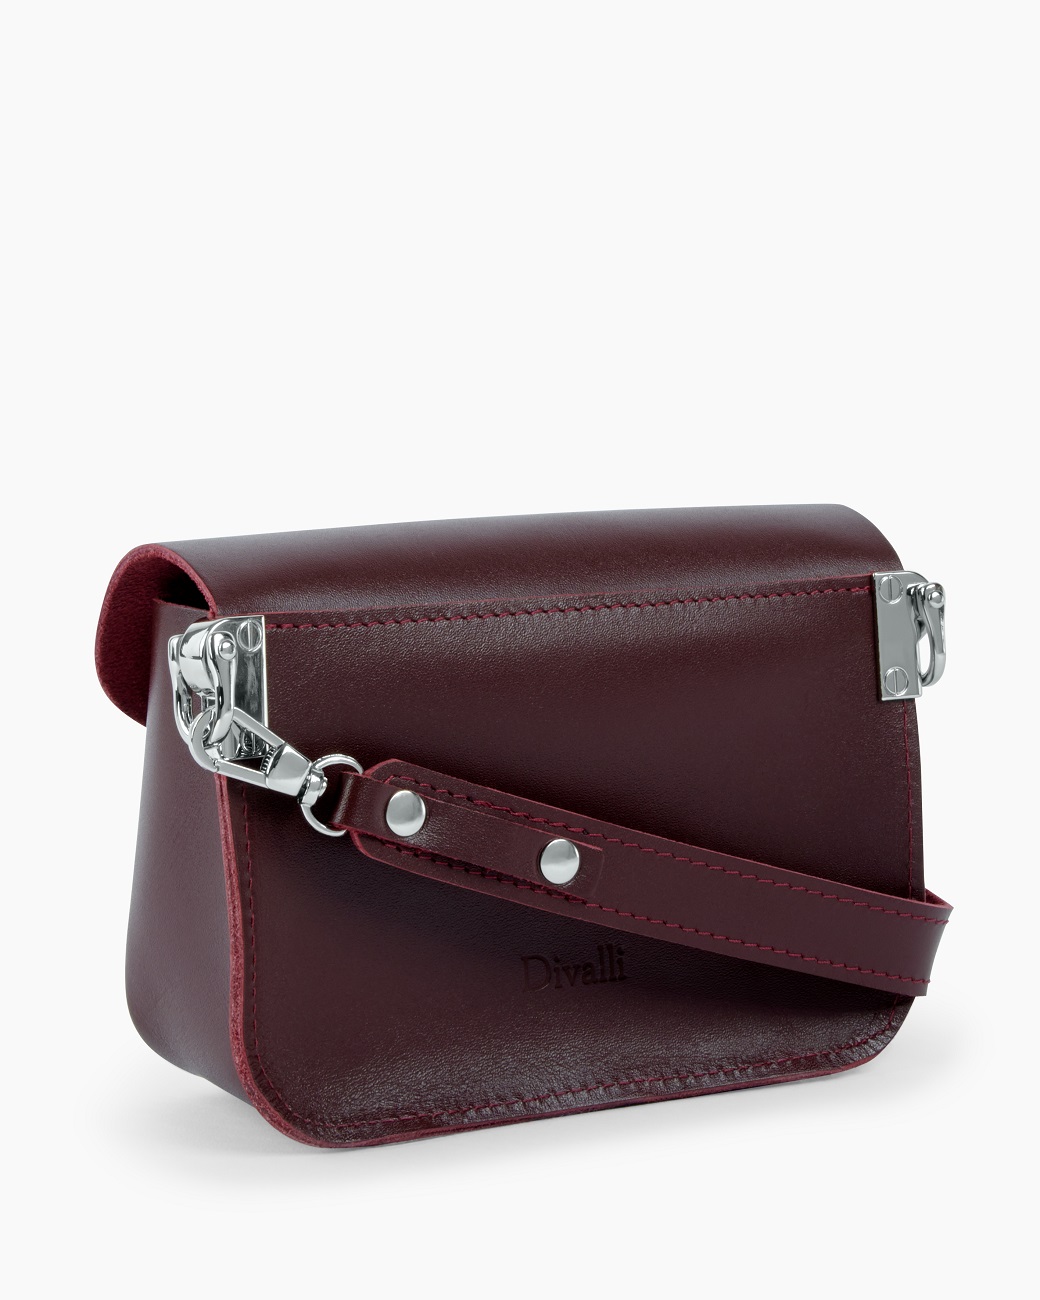 Женская поясная сумка из натуральной кожи бордовая A001 burgundy mini